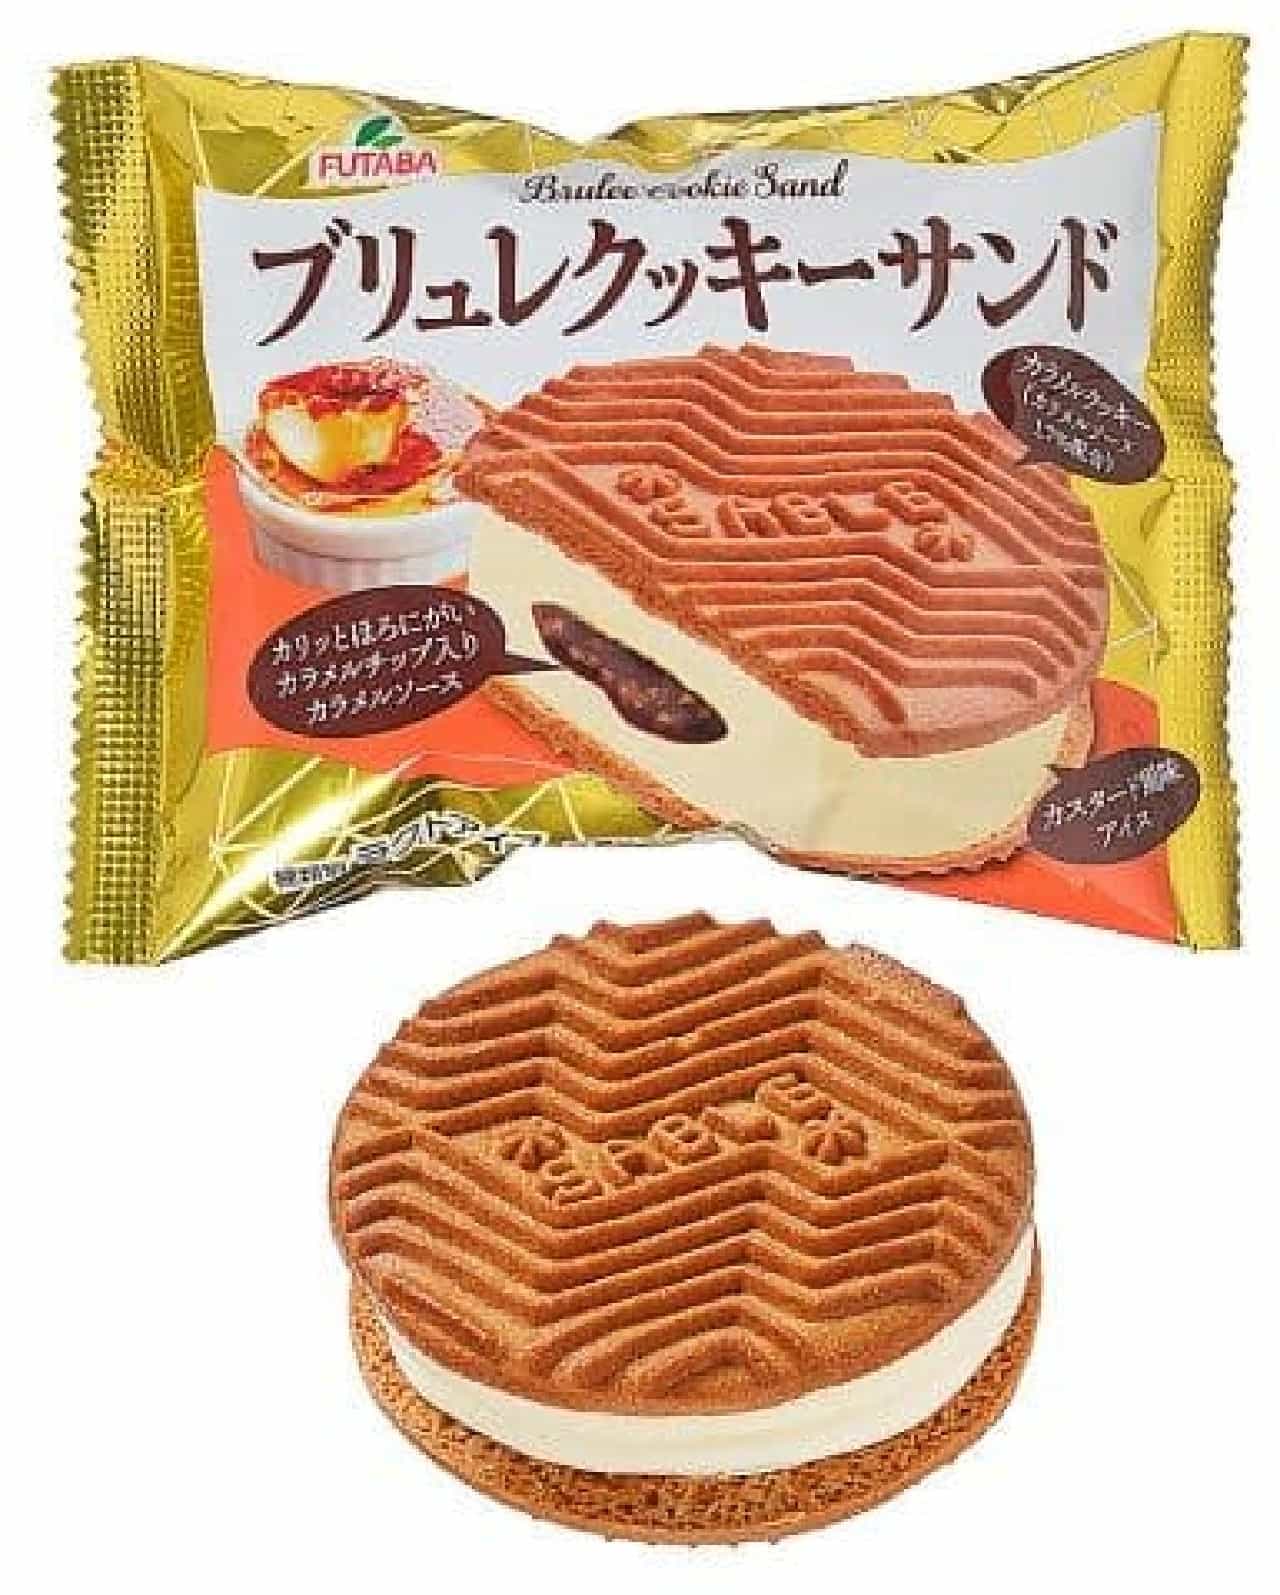 7-Eleven "Futaba Brulée Cookie Sandwich